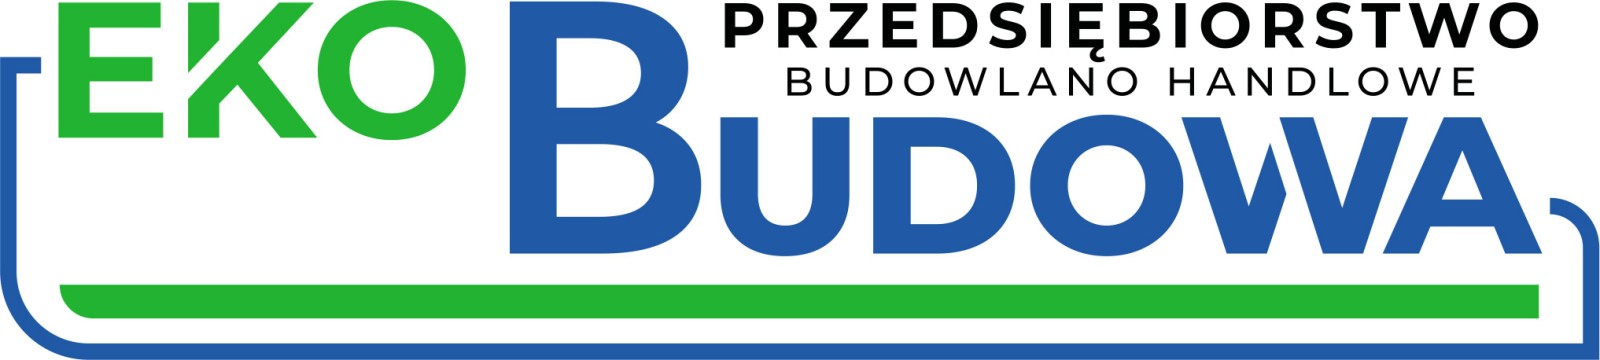 Przedsiębiorstwo Budowlano - Handlowe EKOBUDOWA Lisowski Spółka Jawna